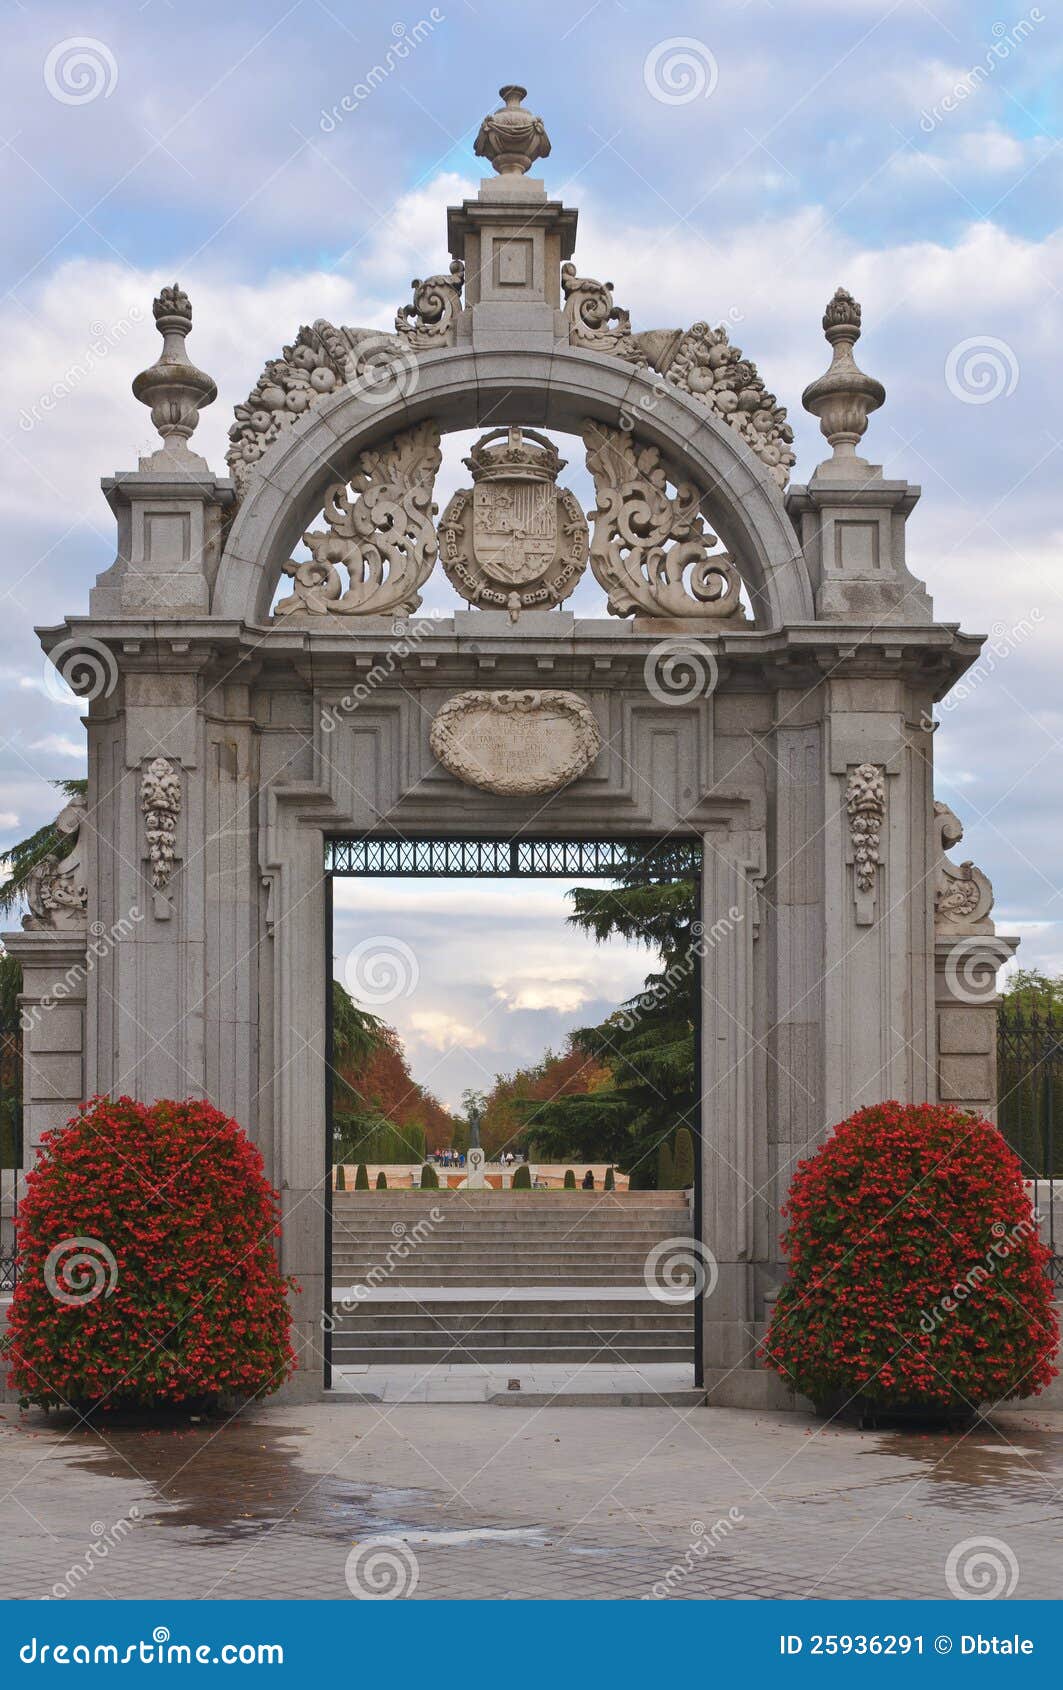 entrance to the parque del buen